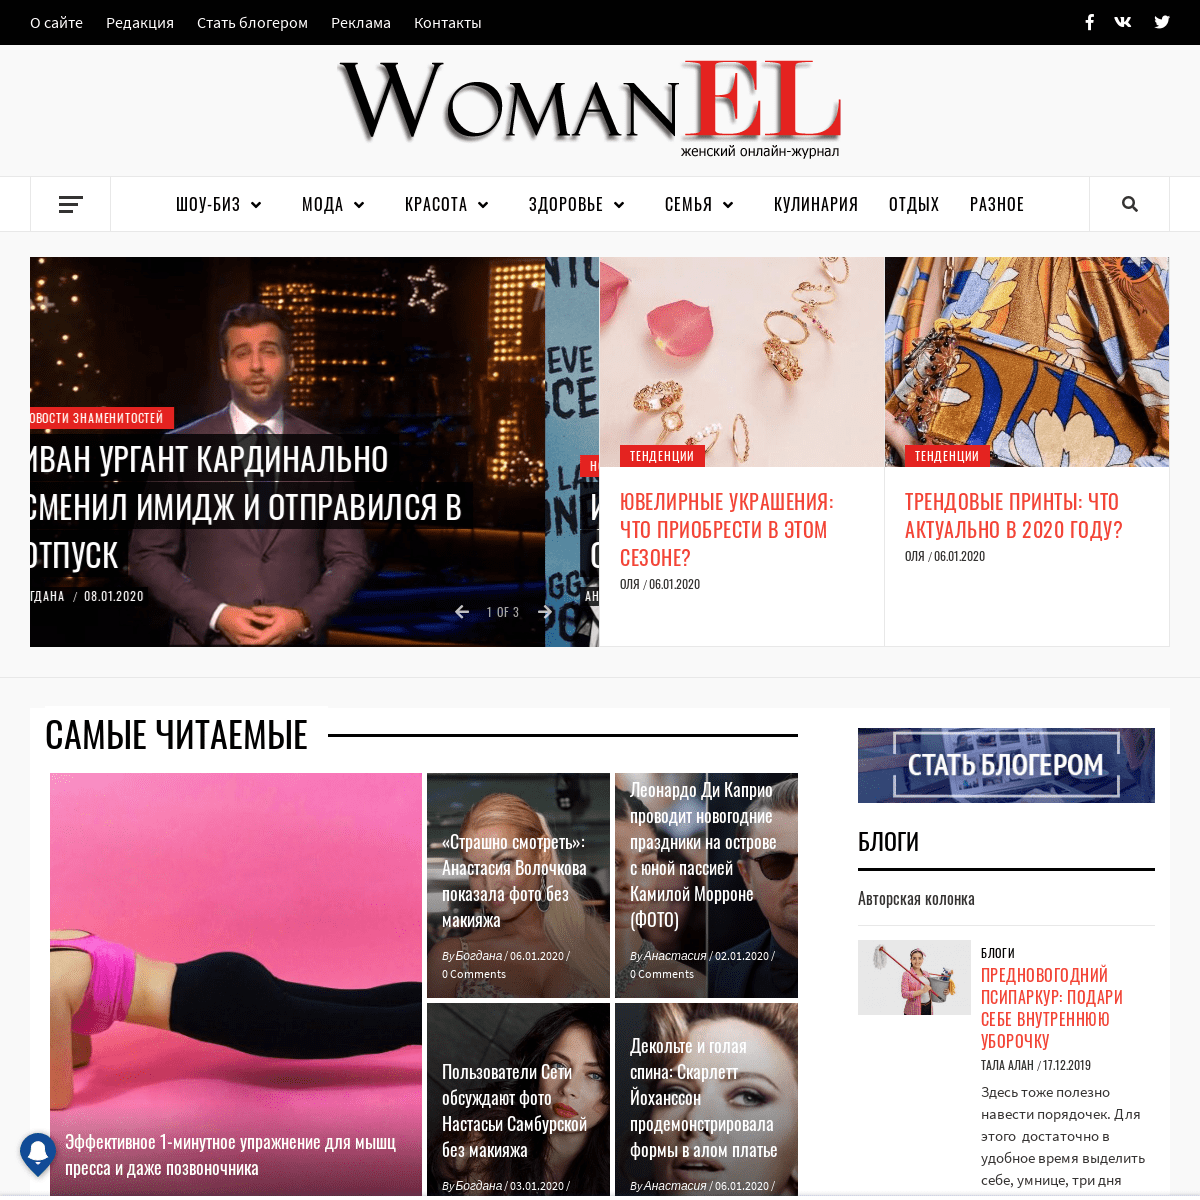 A complete backup of womanel.com.ua